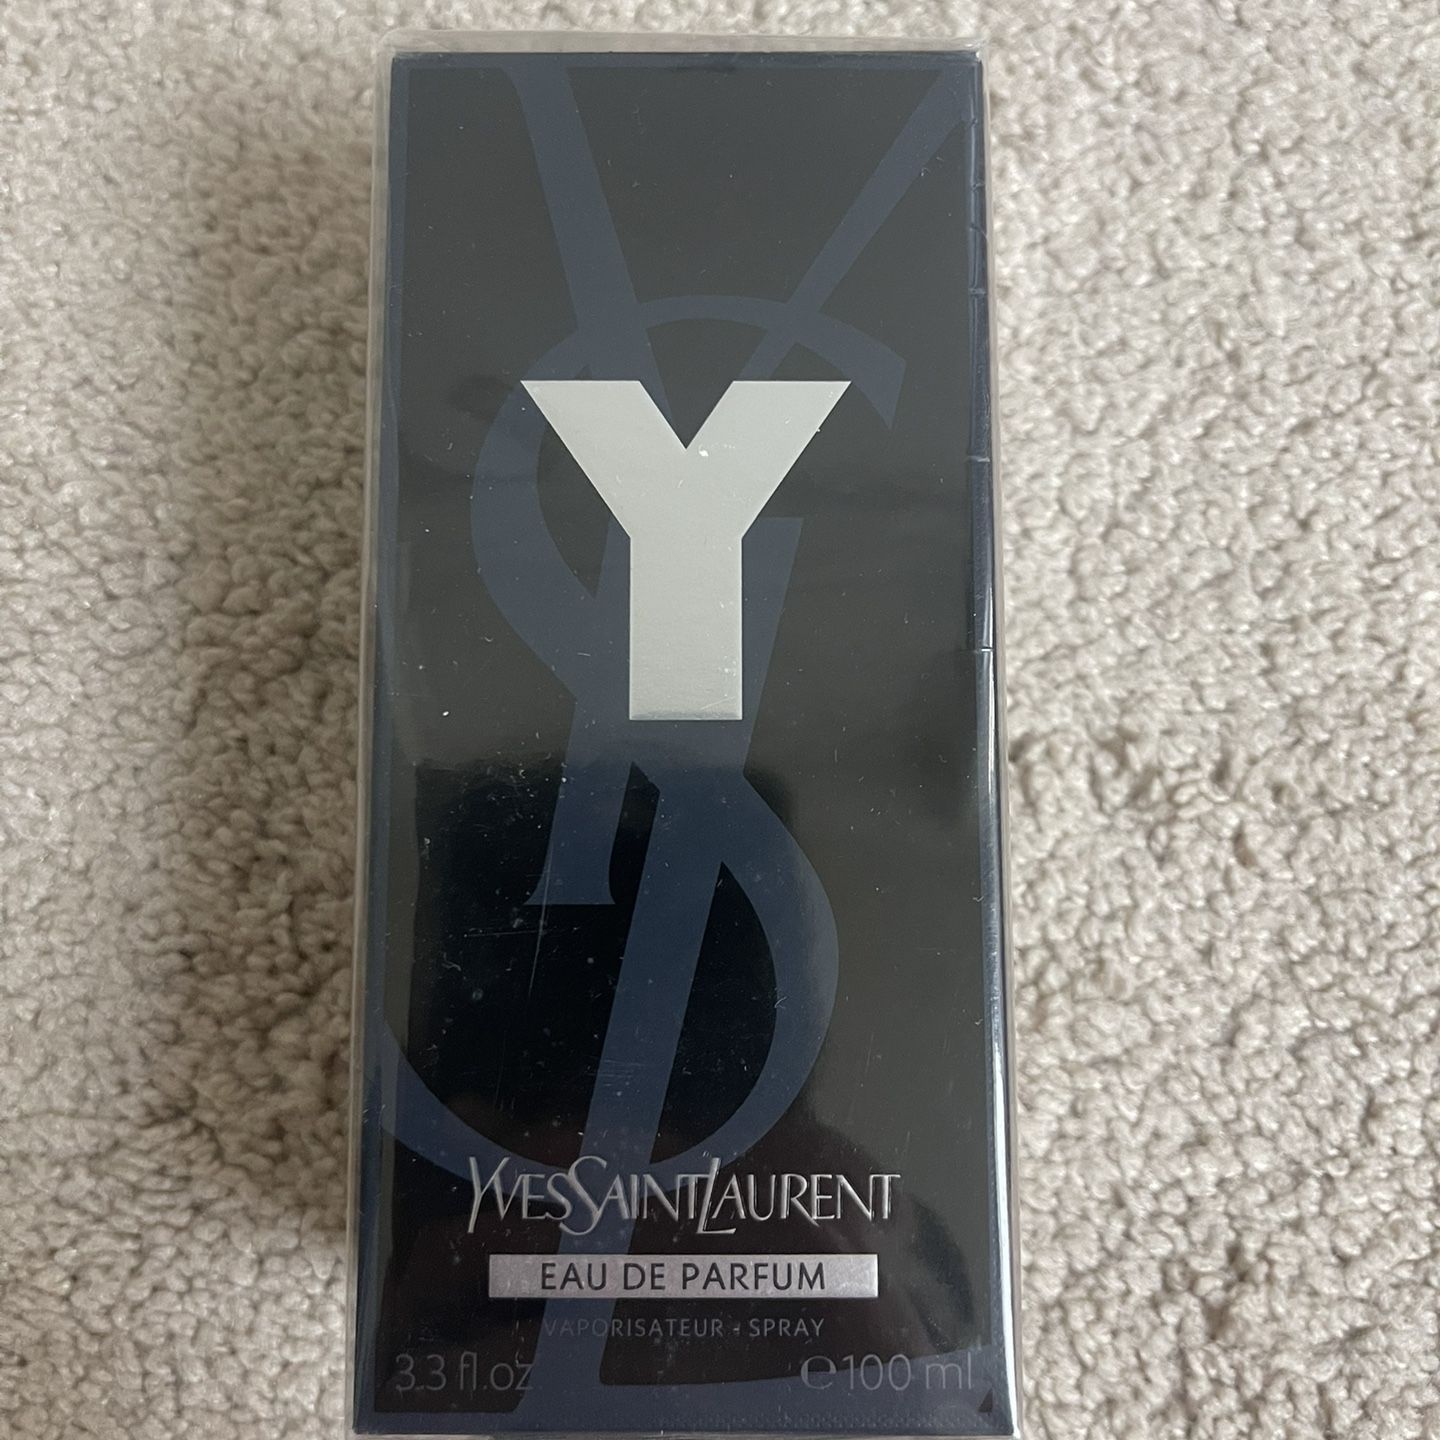 Yves Saint Laurent Eau de Parfum(Men’s Cologne)